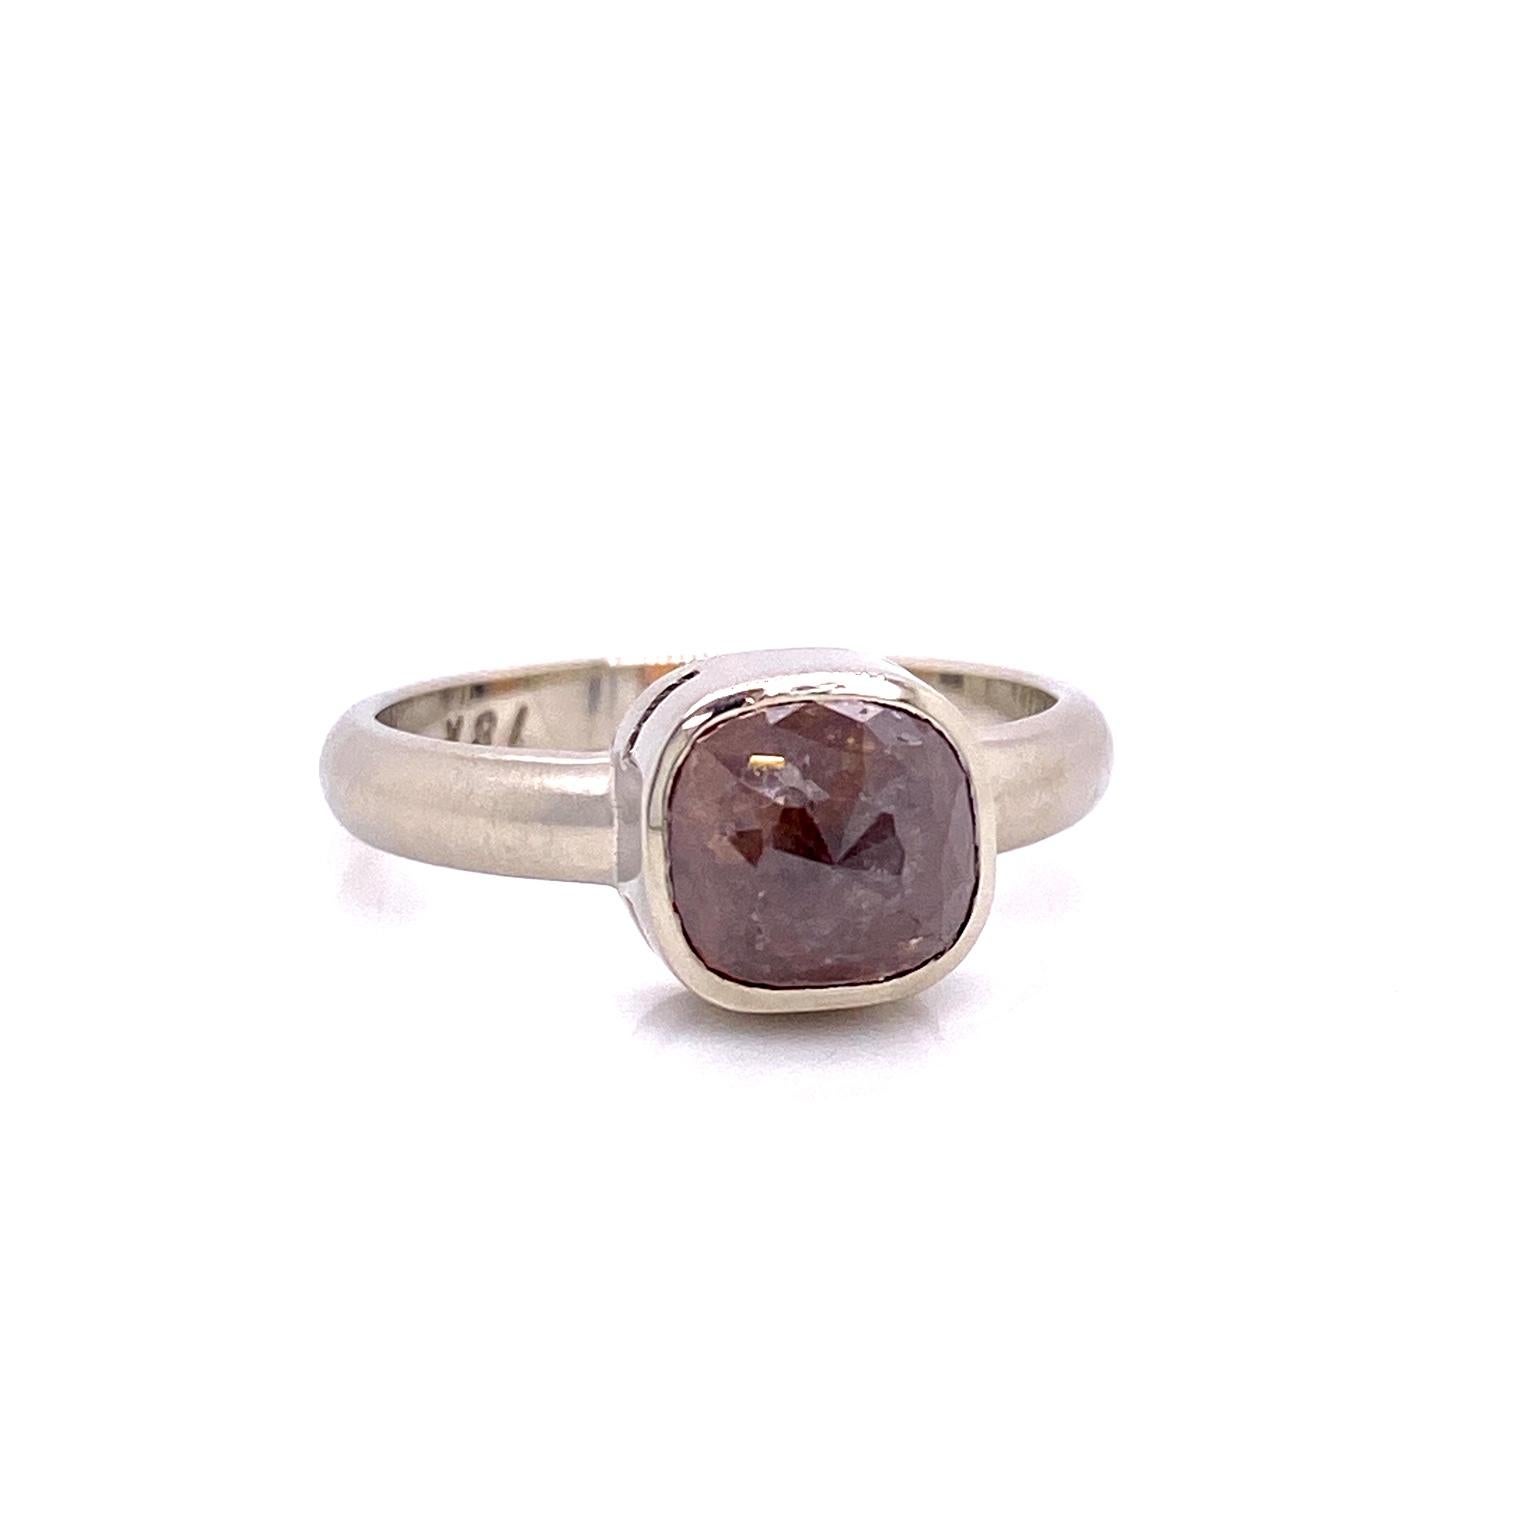 Ein 18k Weißgold Ring Lünette mit einem 3,05 Karat Kissen geschliffenen grauen Rose geschliffenen Diamanten gesetzt. Ring Größe 7. Dieser Ring wurde von llyn strong entworfen und hergestellt.